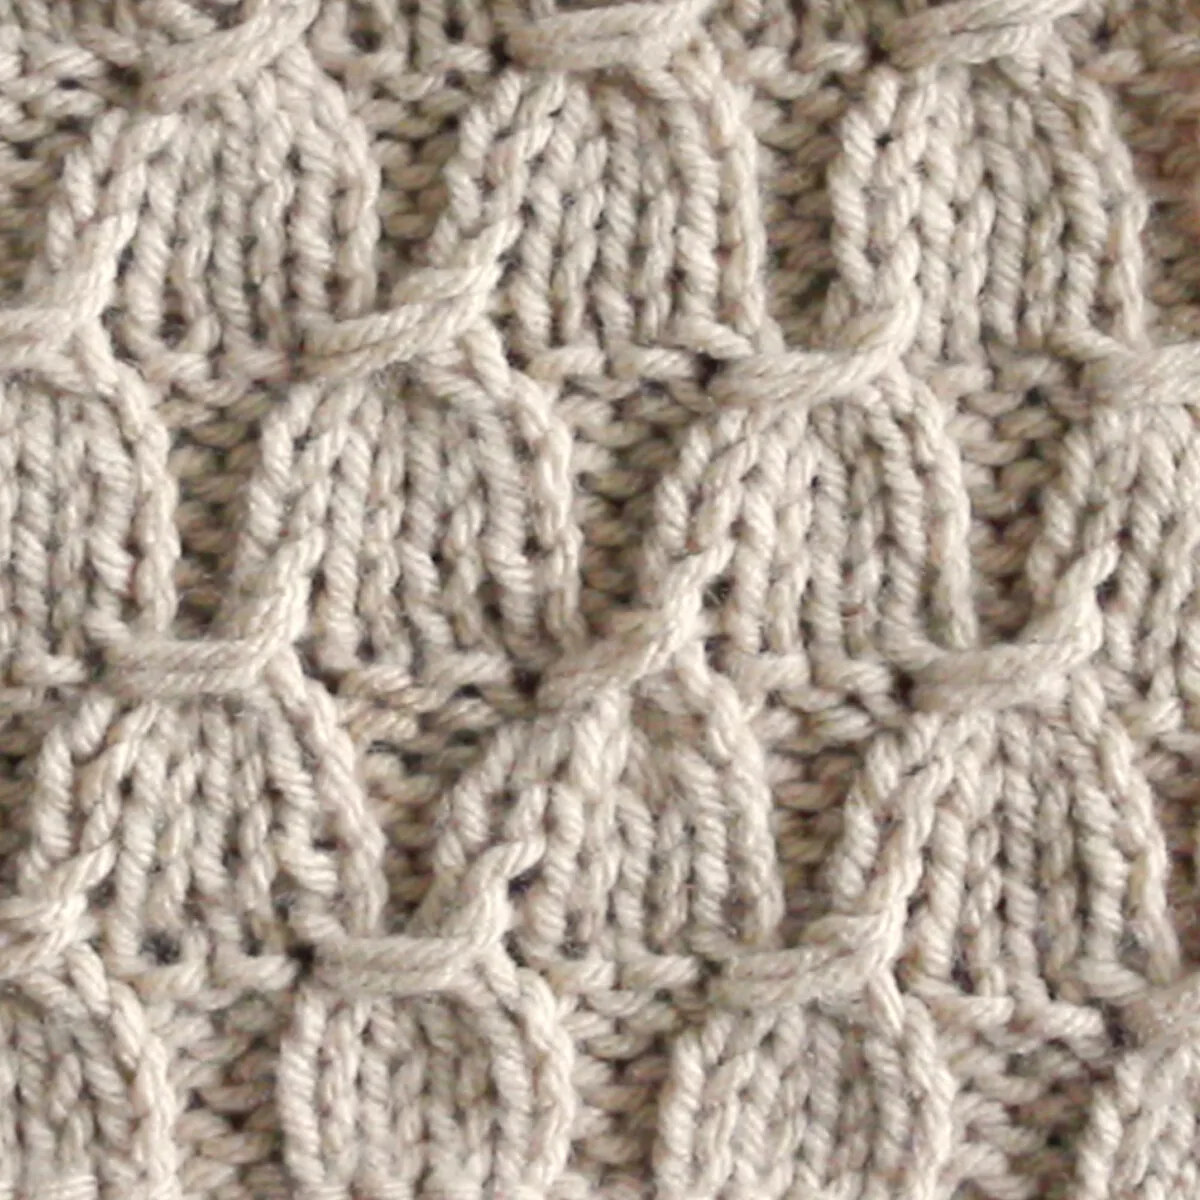 Tassel Stitch Knitting Pattern in Beige color yarn.